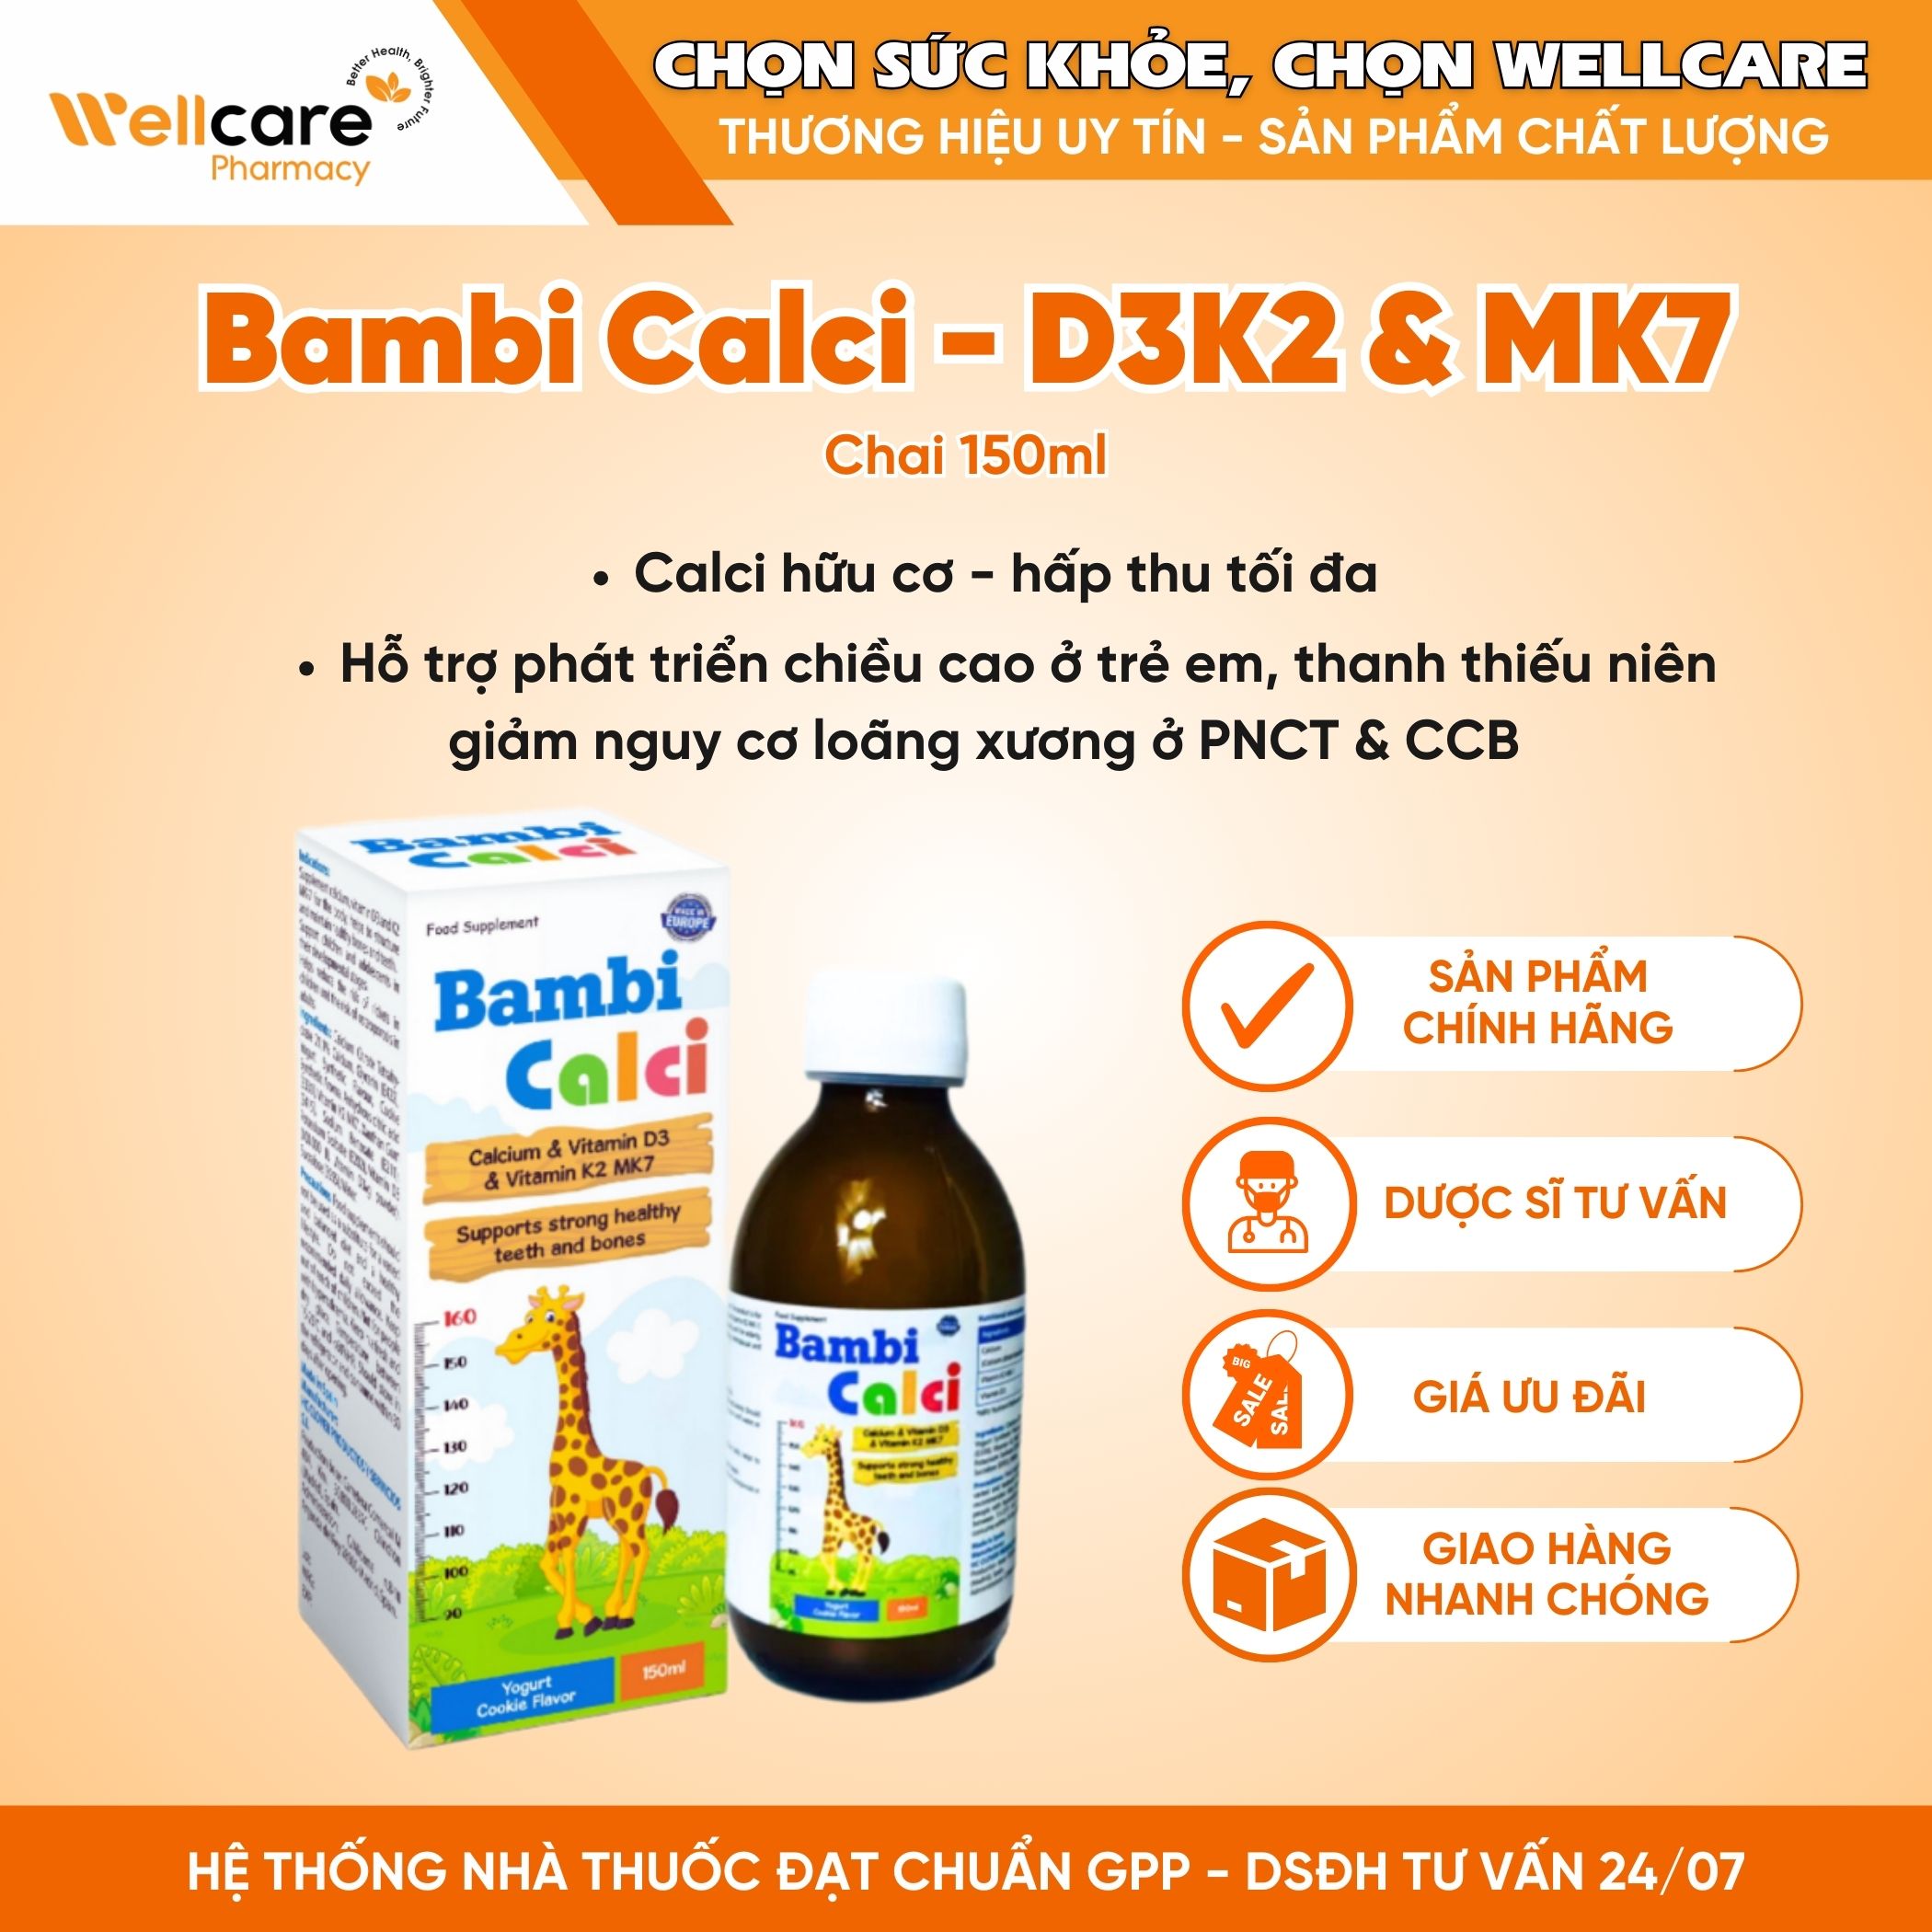 Bambi Calci – Bổ sung Canxi, Vitamin D3 và Vitamin K2MK7 cho trẻ (Chai 150ml)